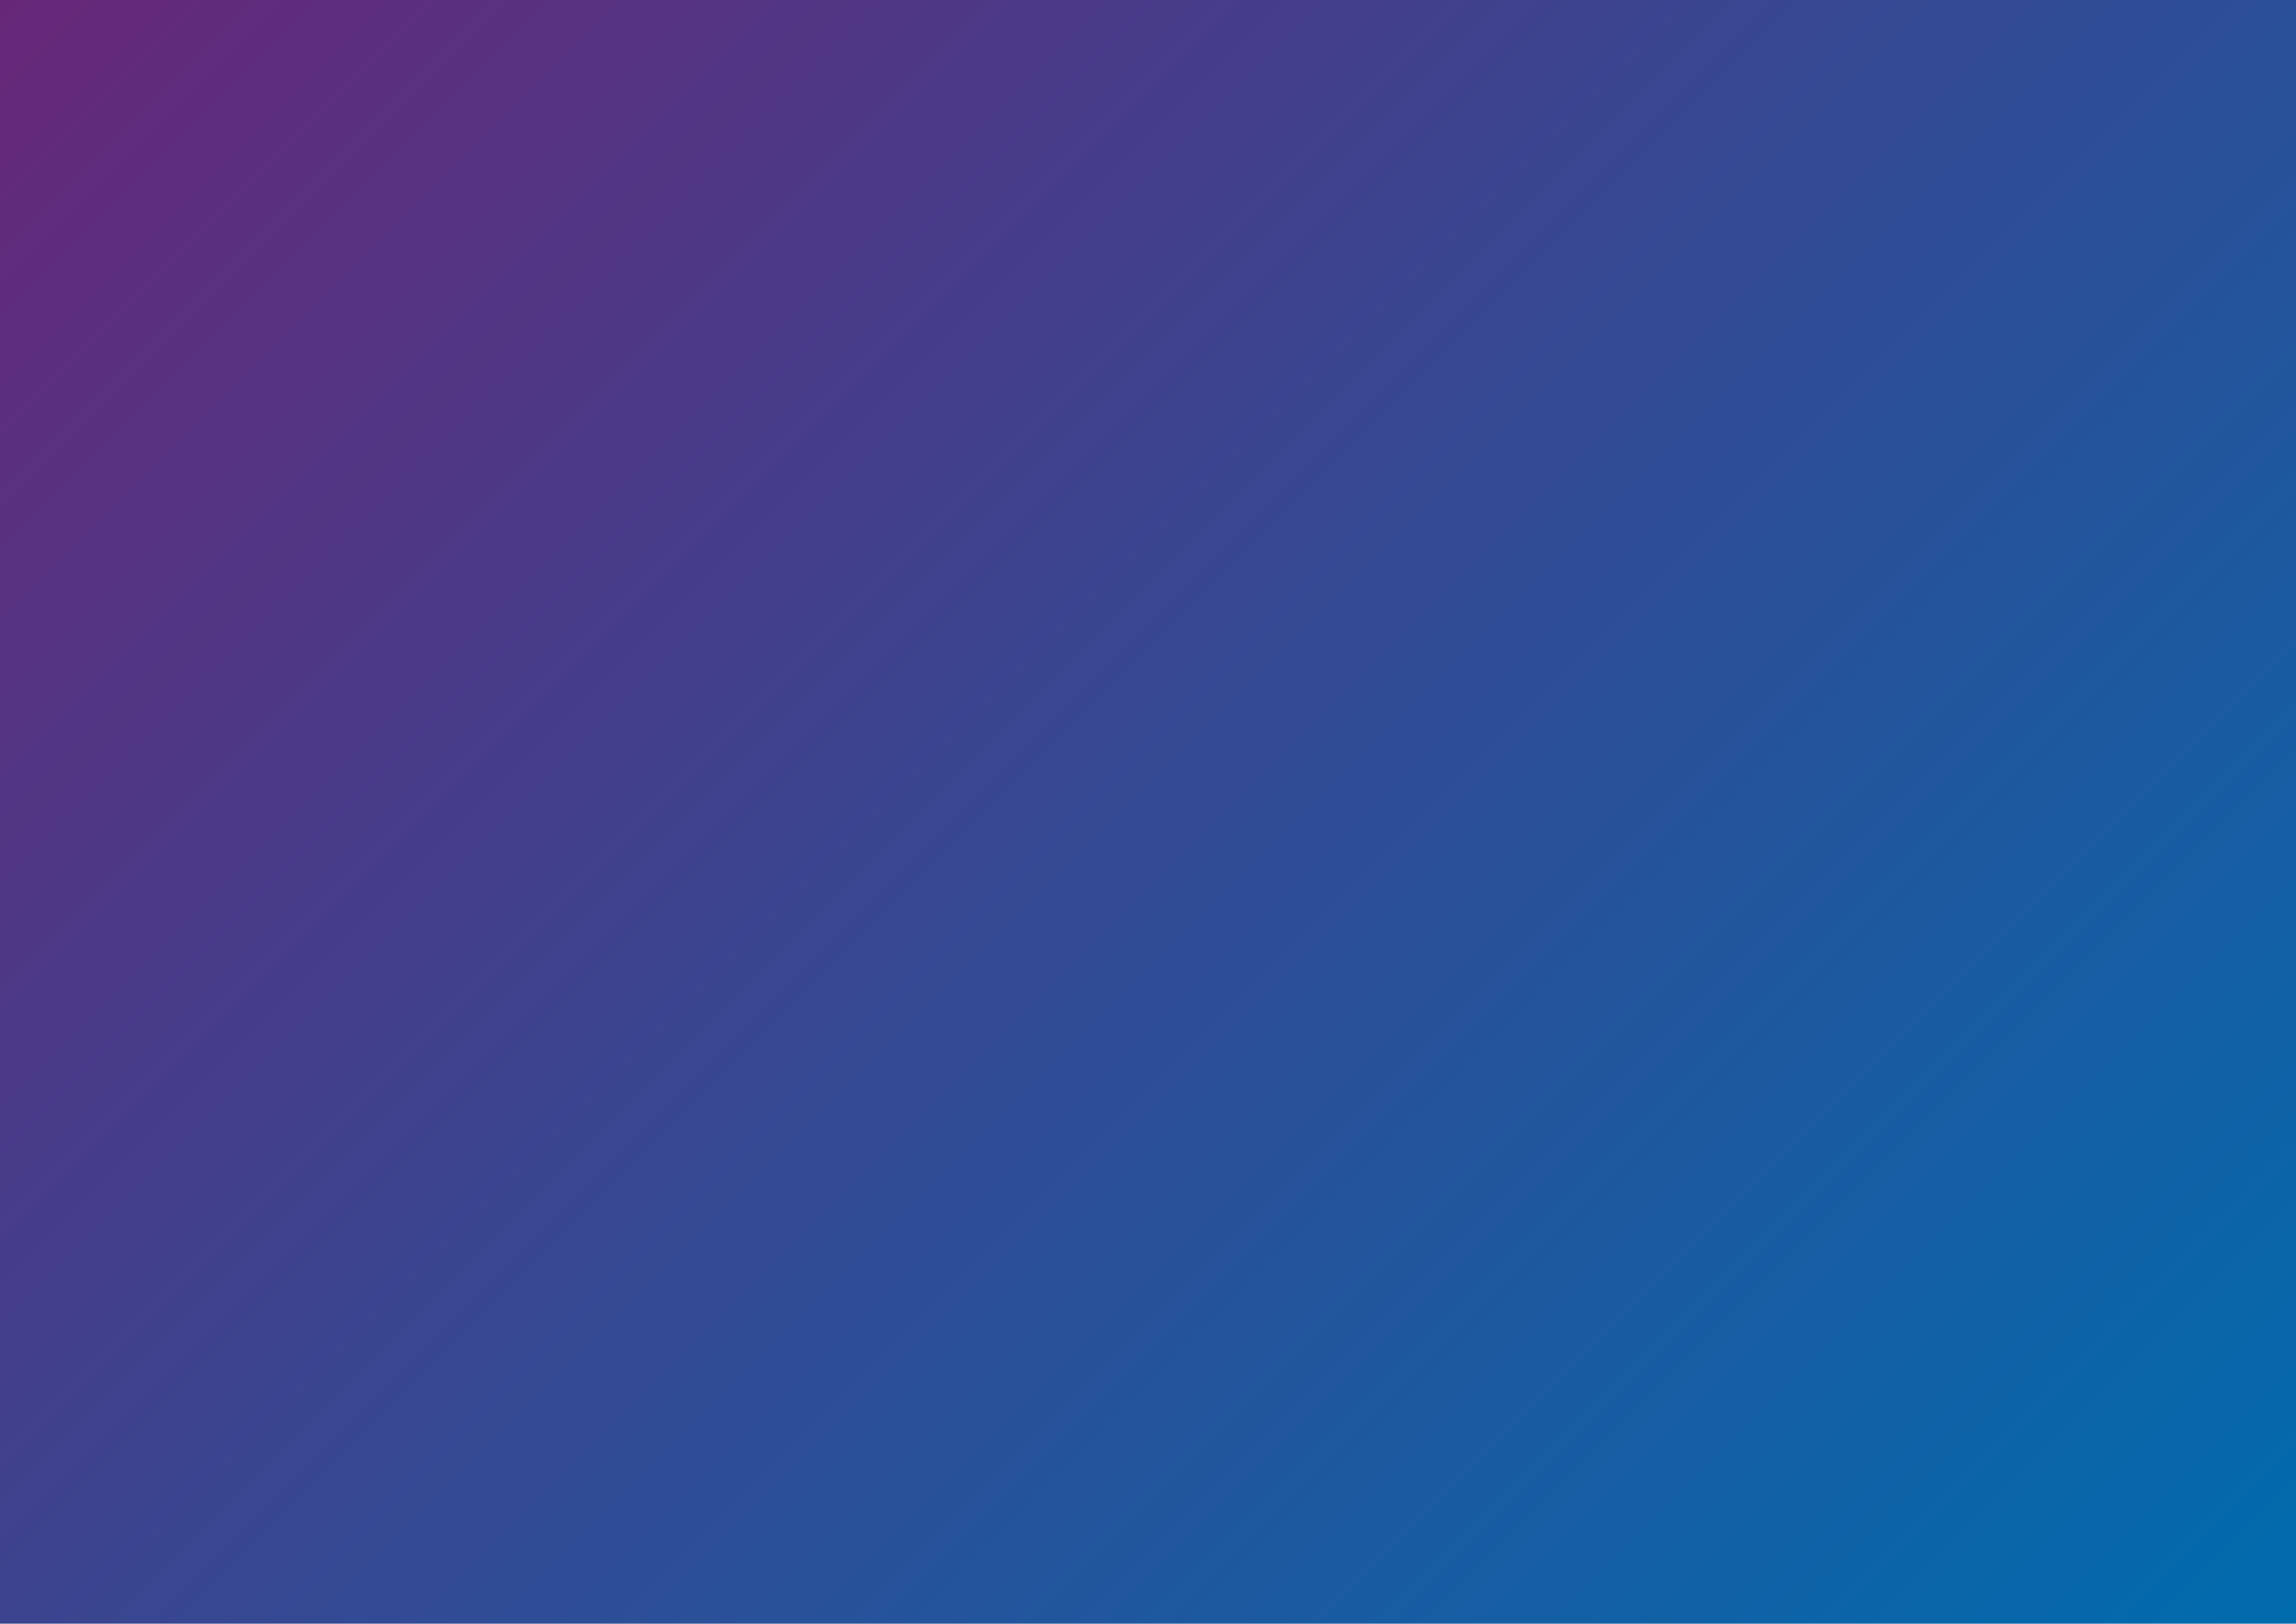 Gradient_A4-purple-blue